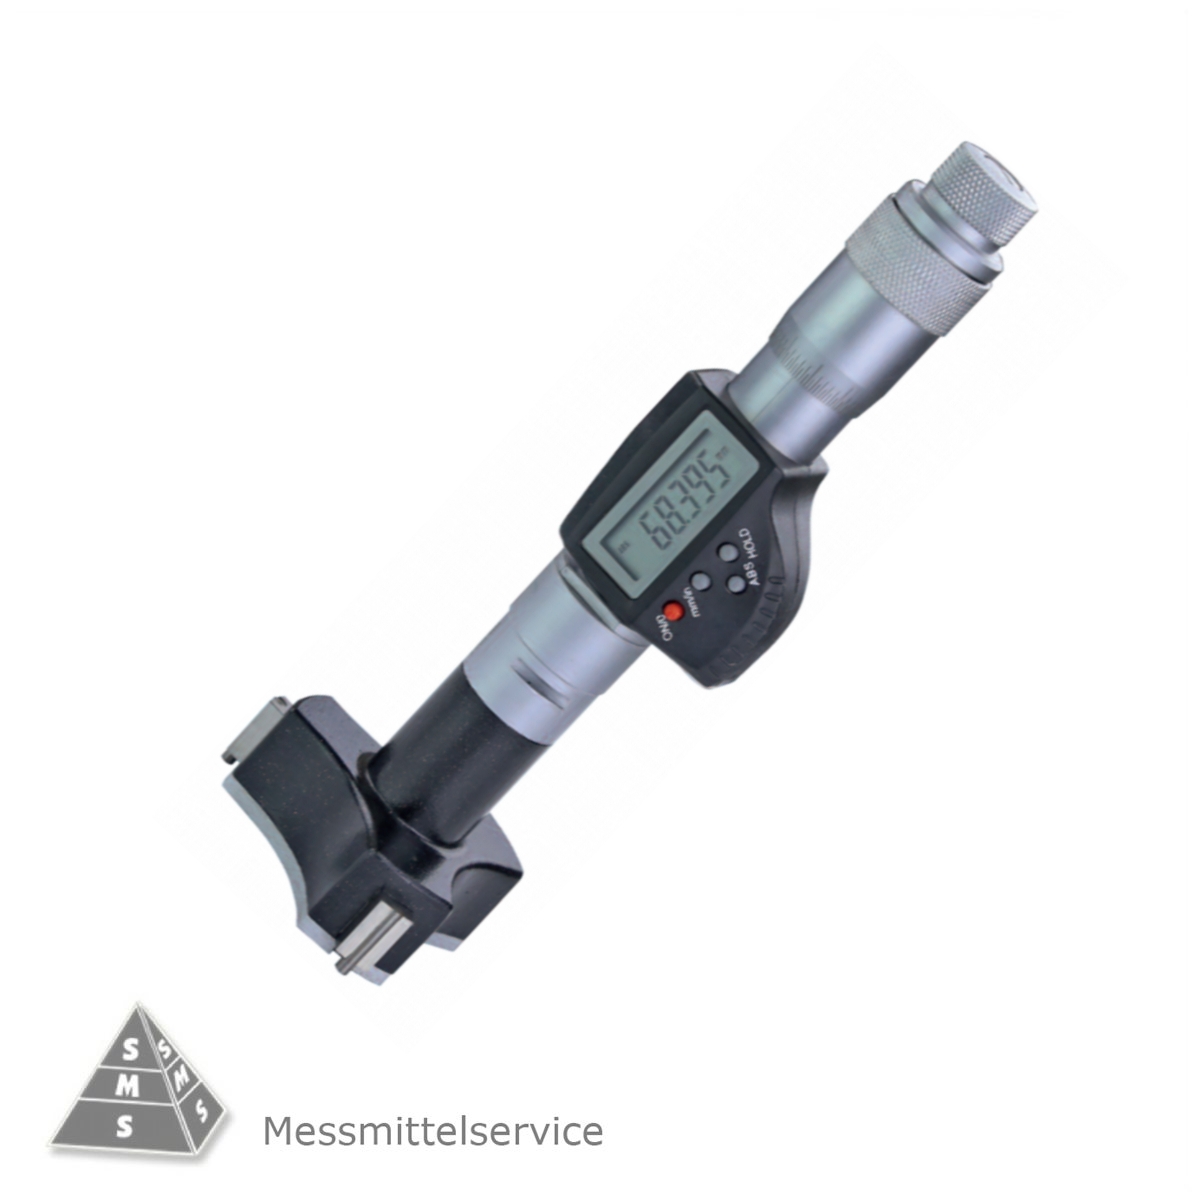 Dreipunkt Innenmessschraube NEU OVP Mikrometer Messbereiche wählbar  6-100 mm 